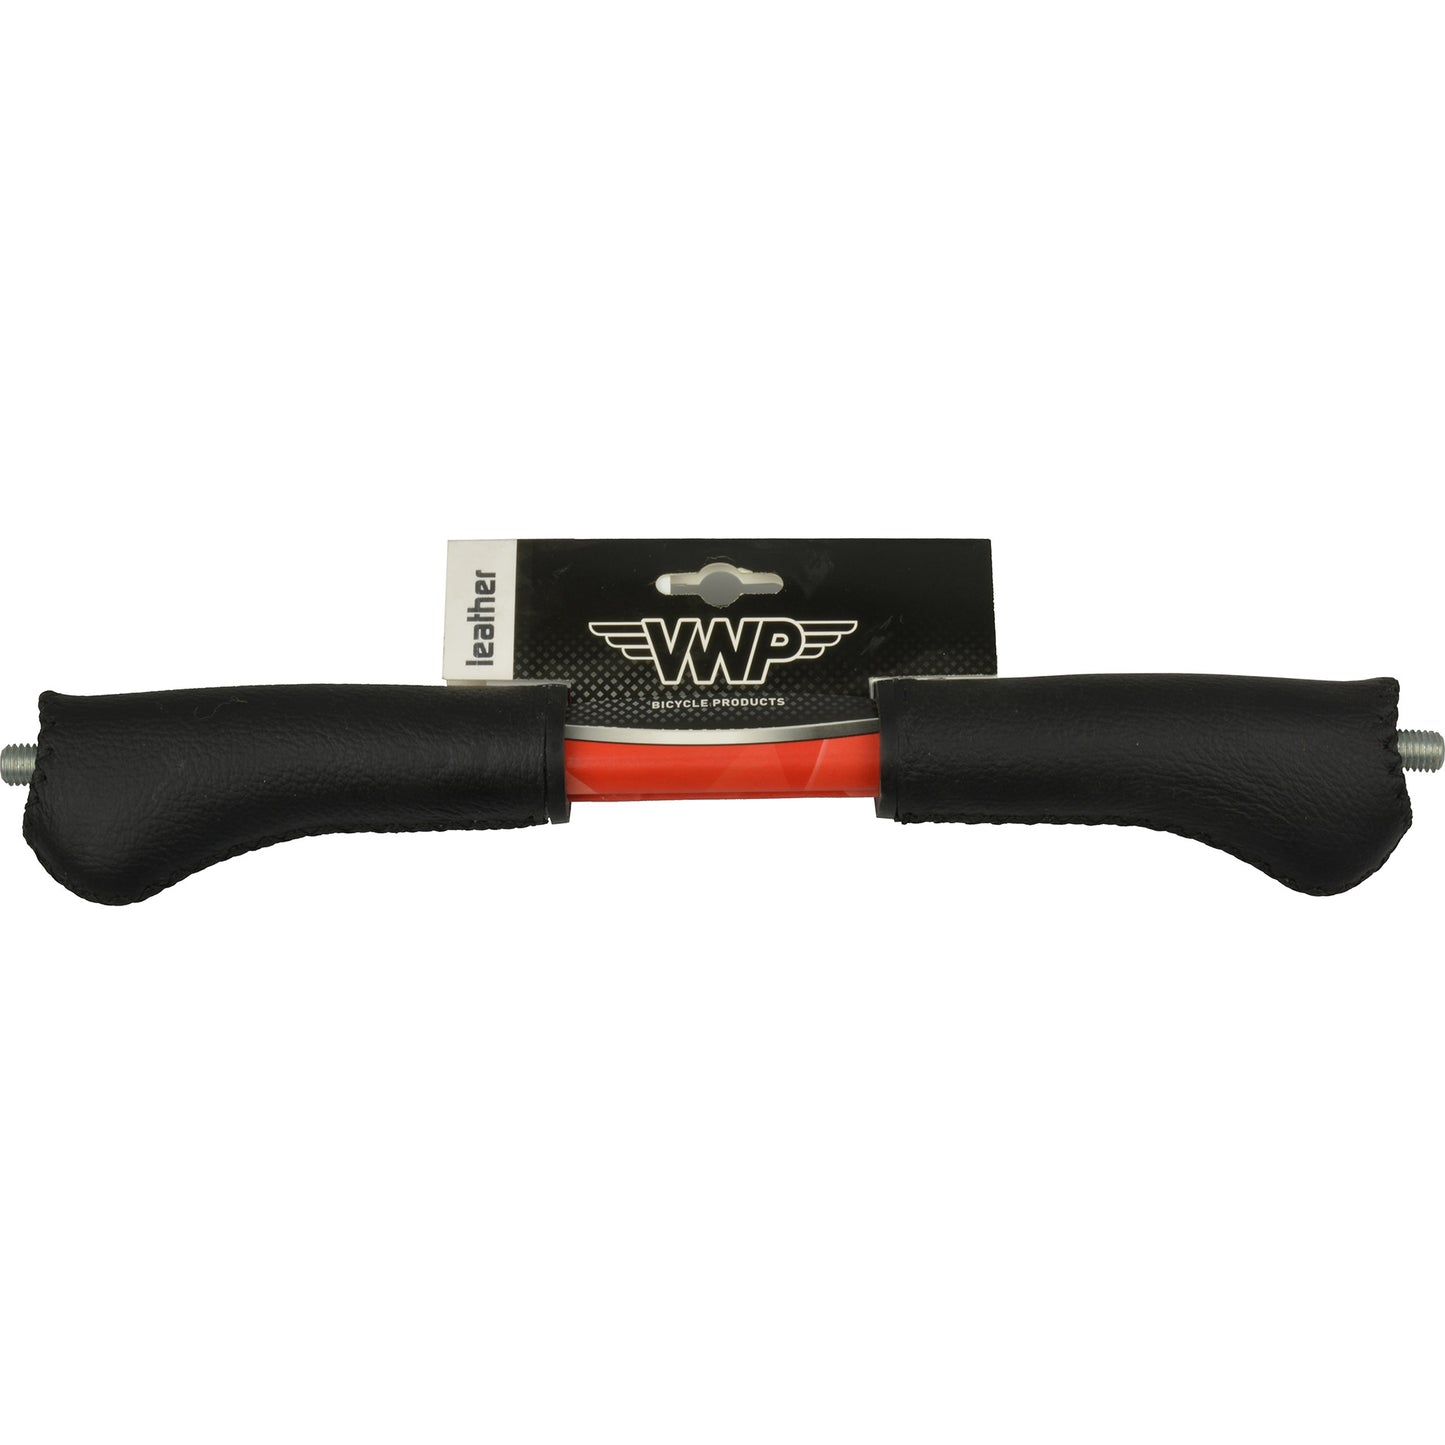 VWP VWP Widek Impugnatura regolabile in pelle ibrida 120 mm carta nera